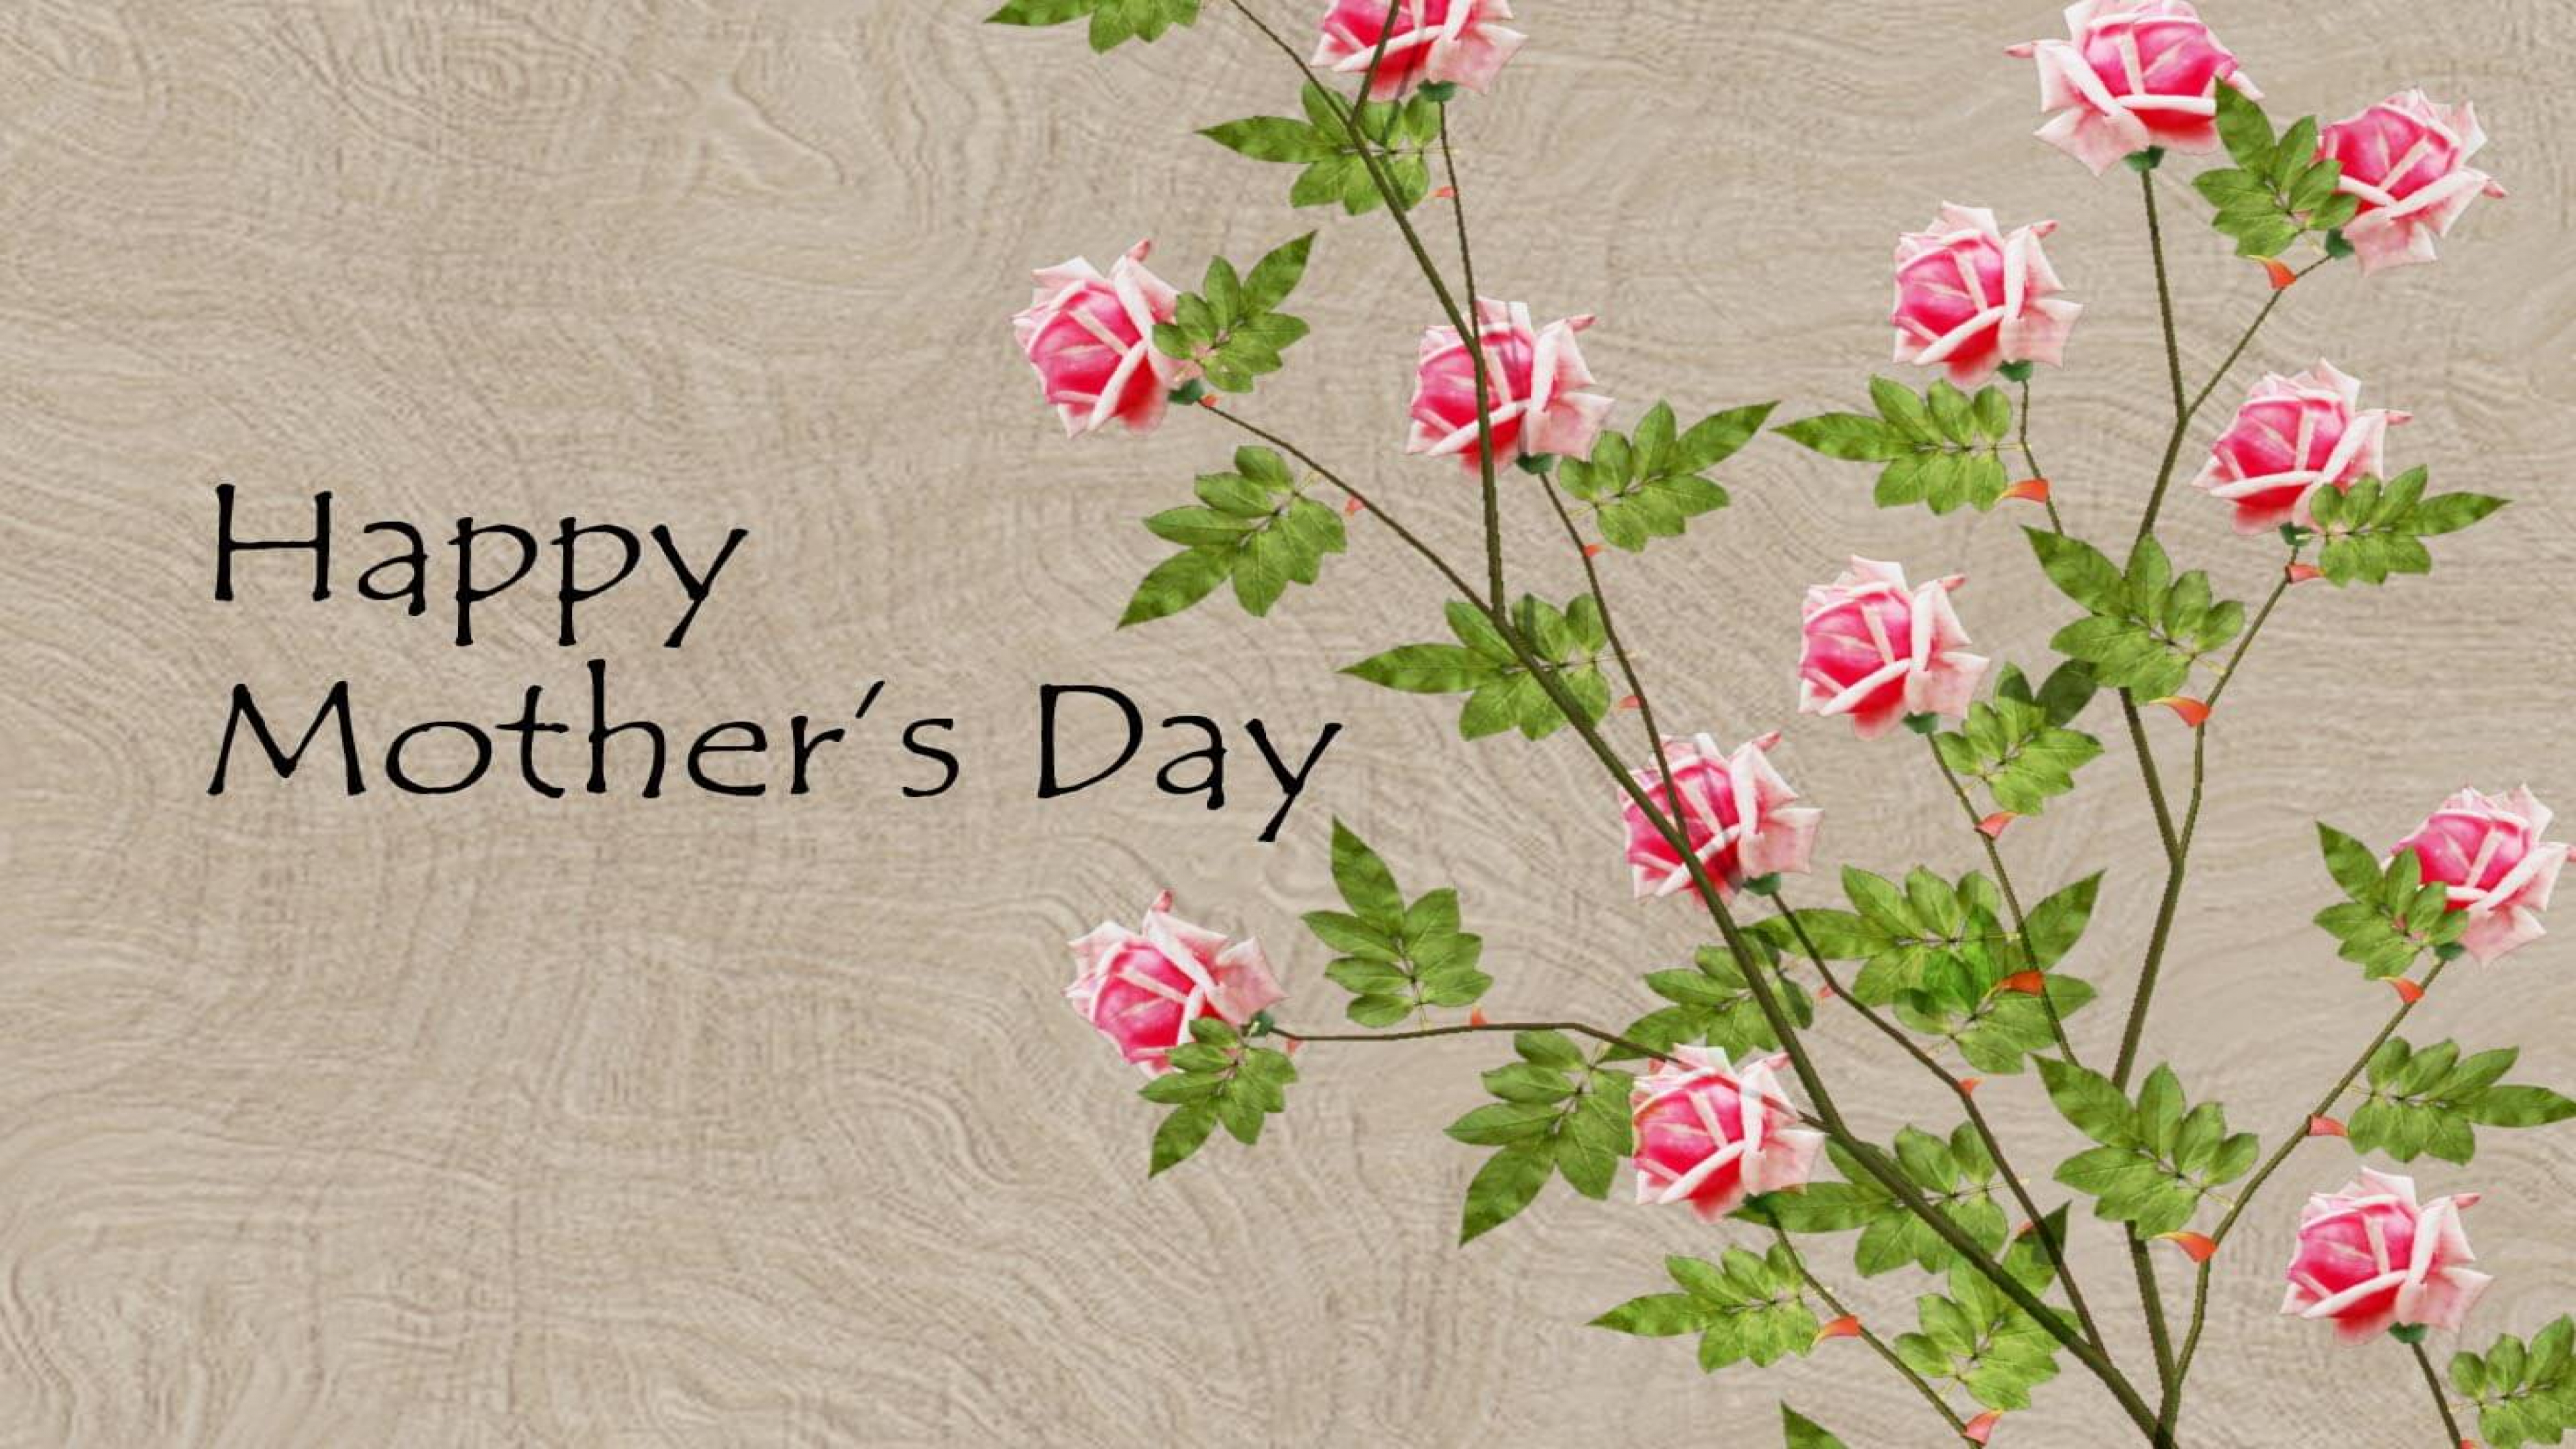 Поздравление мамы на английском. Happy mother s Day. Mother's Day открытка. Мазерс Дэй. Поздравление с днем матери на английском.